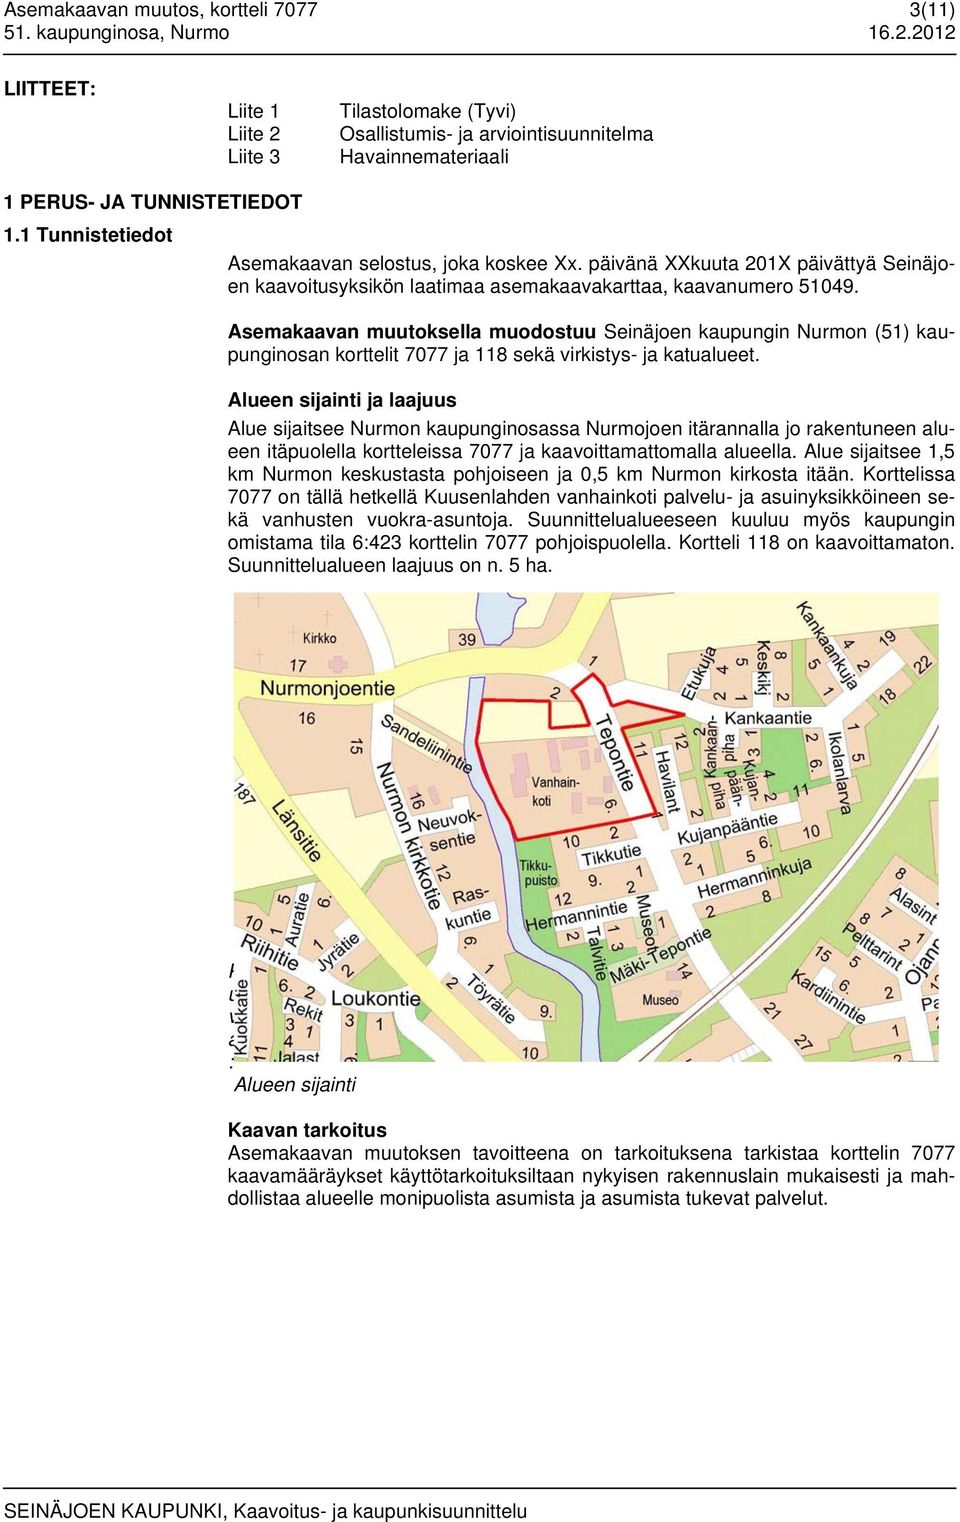 Asemakaavan muutoksella muodostuu Seinäjoen kaupungin Nurmon (51) kaupunginosan korttelit 7077 ja 118 sekä virkistys- ja katualueet.